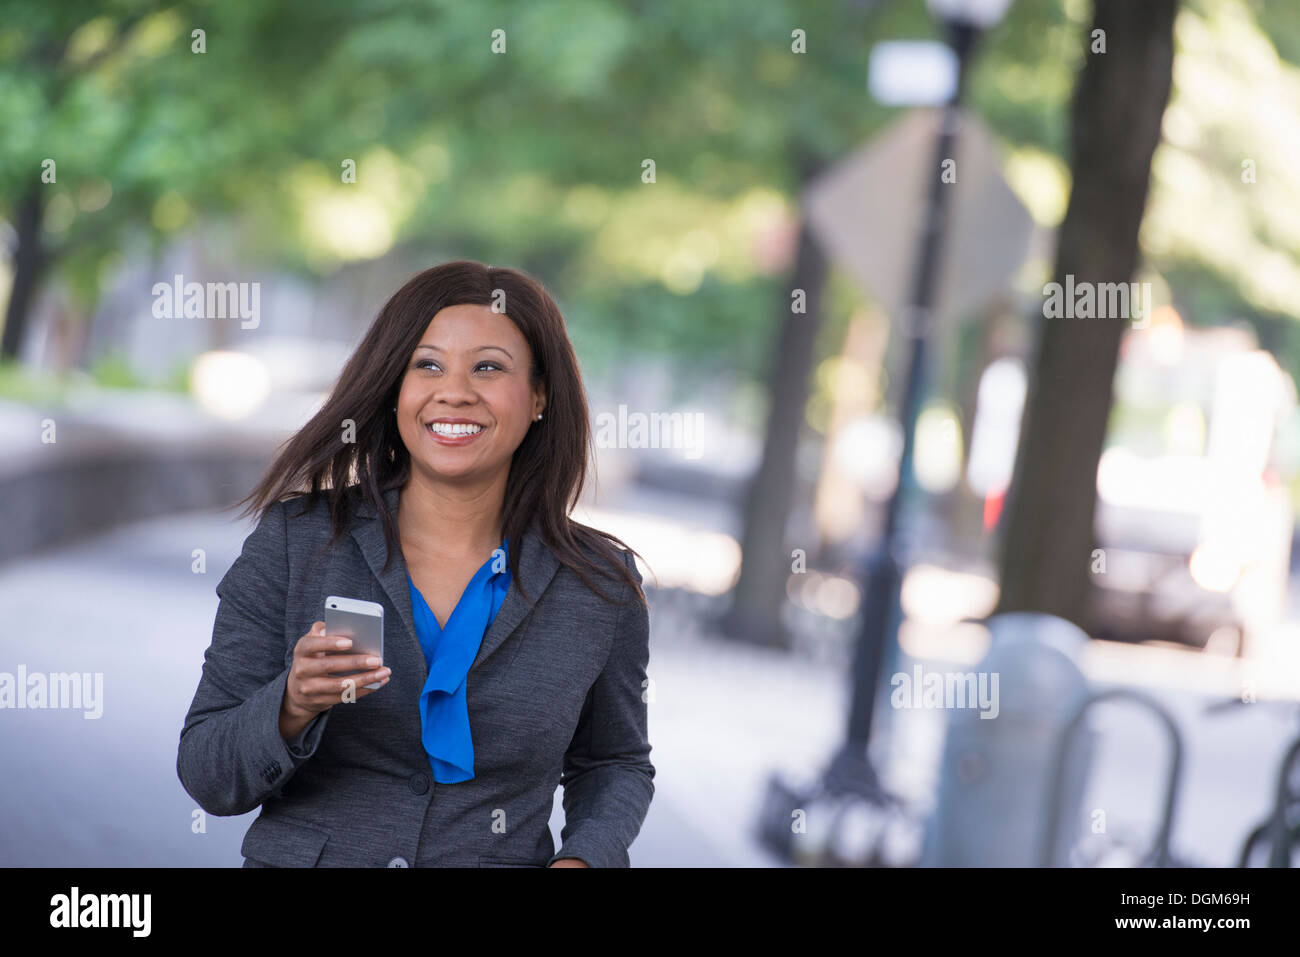 L'été. Une femme dans un costume gris avec une chemise bleu vif. La tenue d'un téléphone intelligent. Banque D'Images